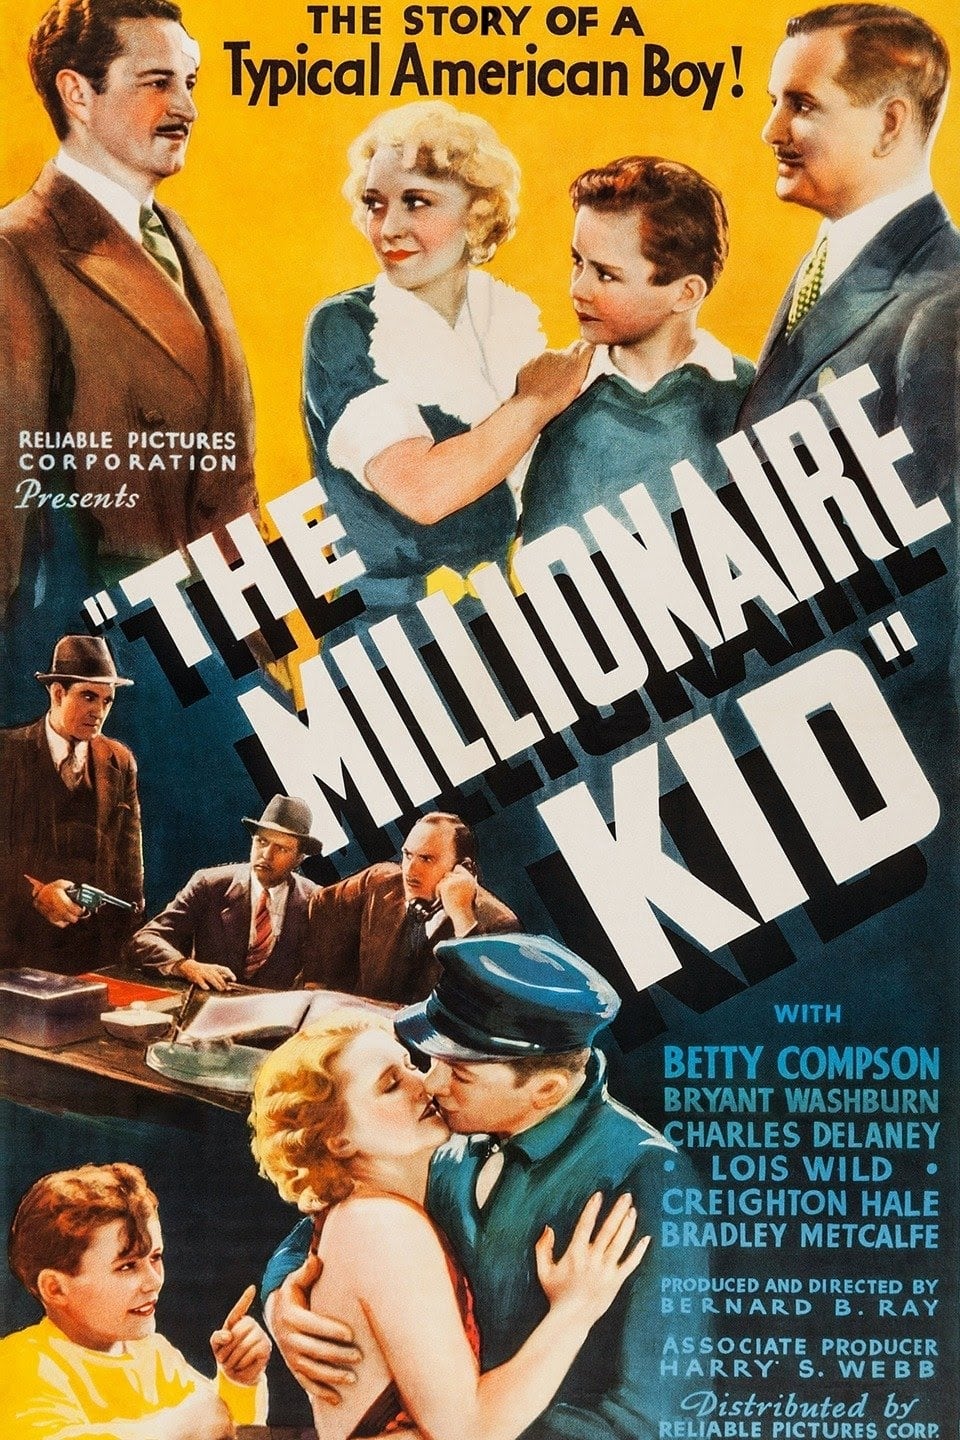 The Millionaire Kid